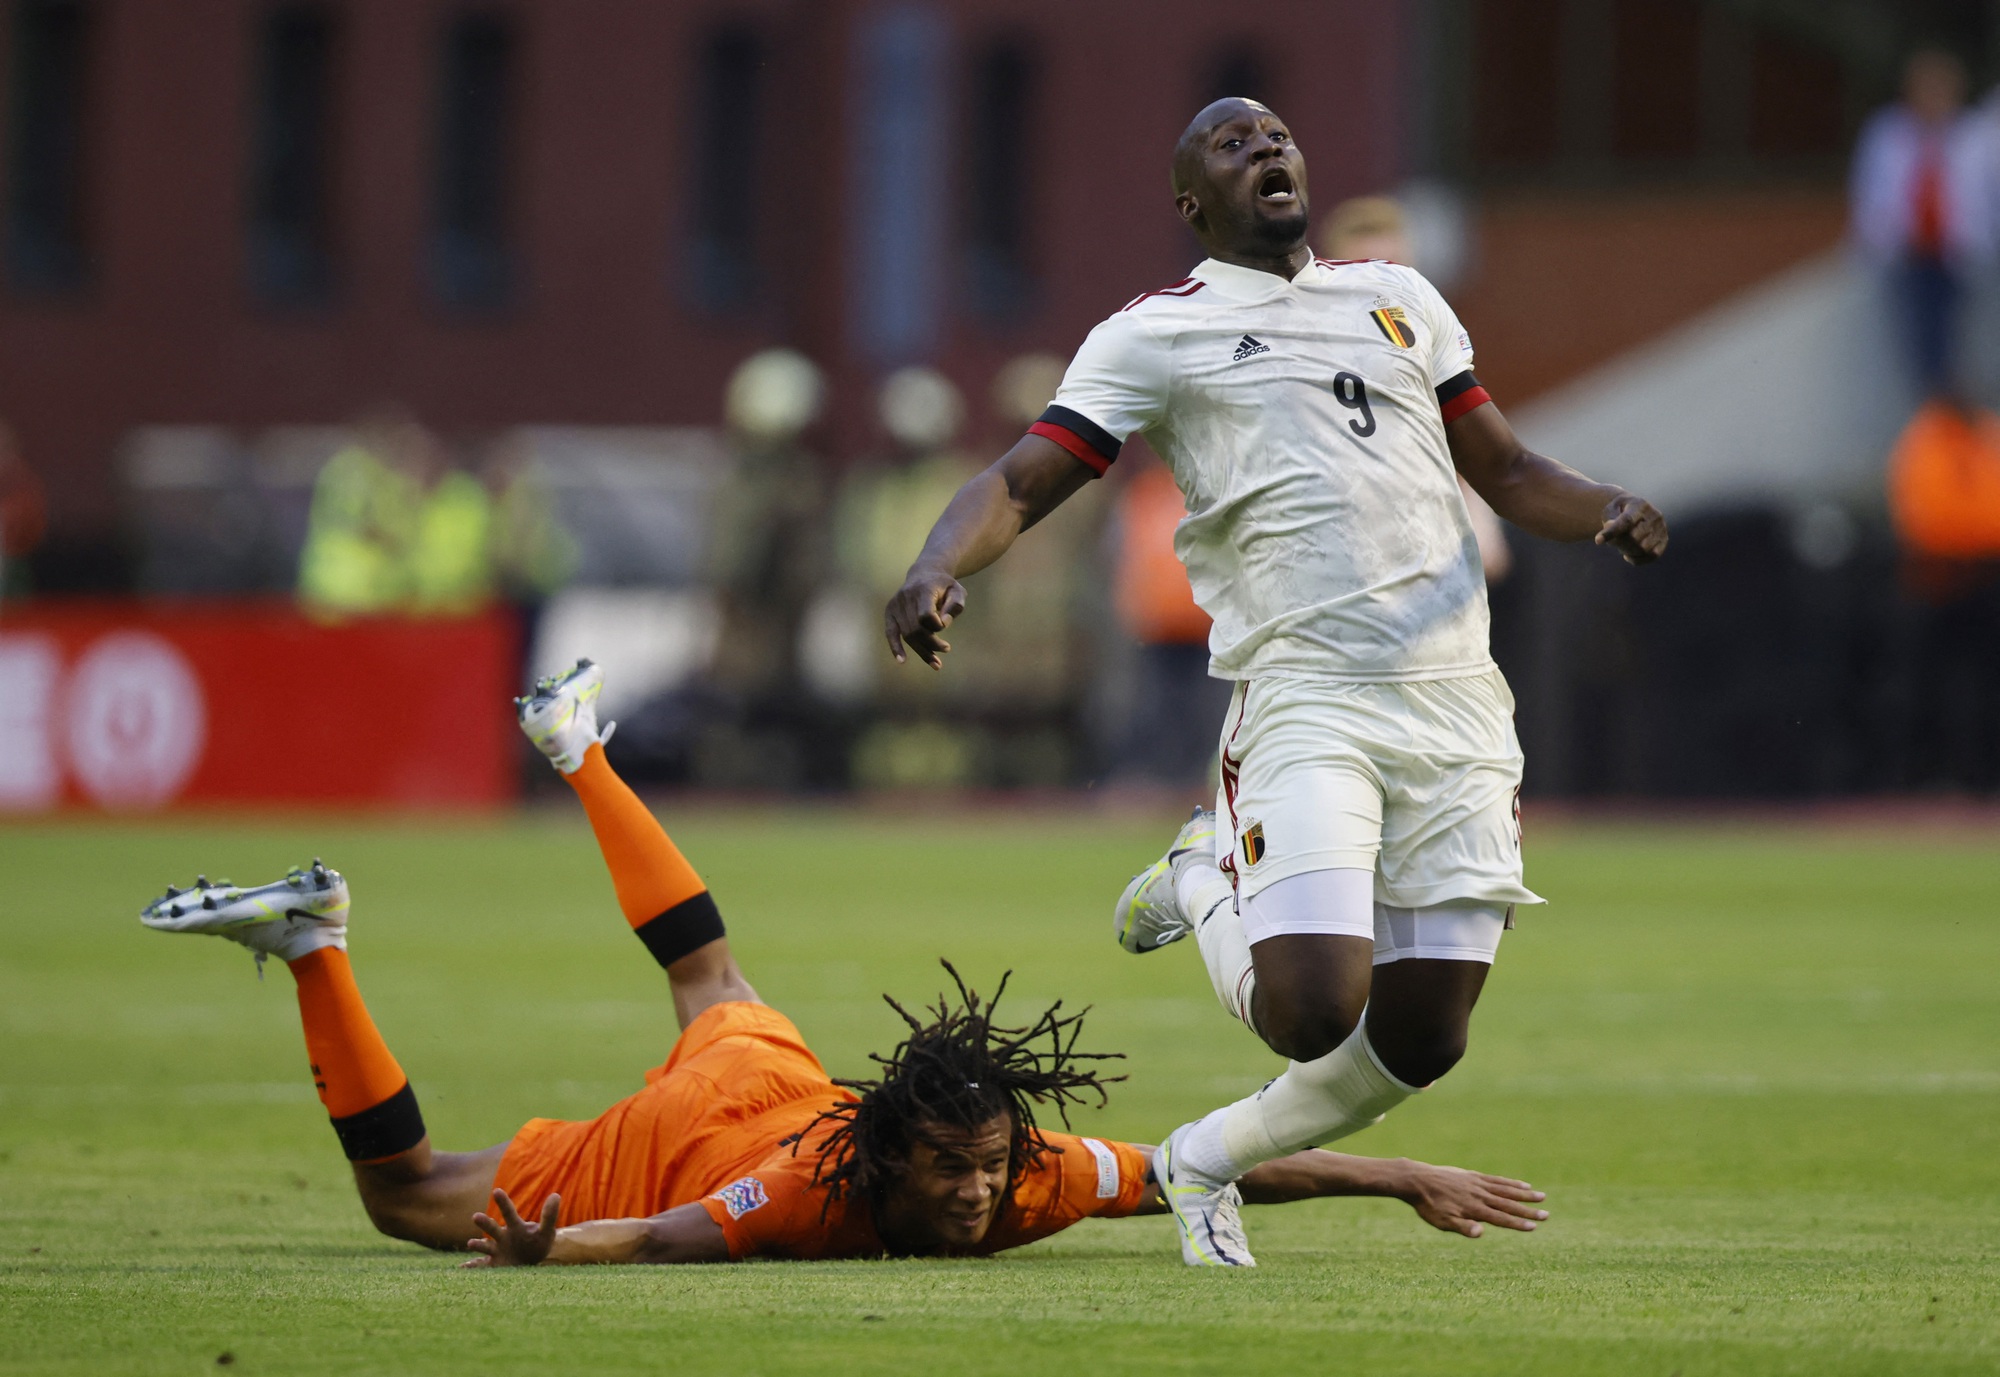 Thua tan tác sân nhà, Bỉ mở màn thảm họa Nations League trước Hà Lan - Ảnh 1.